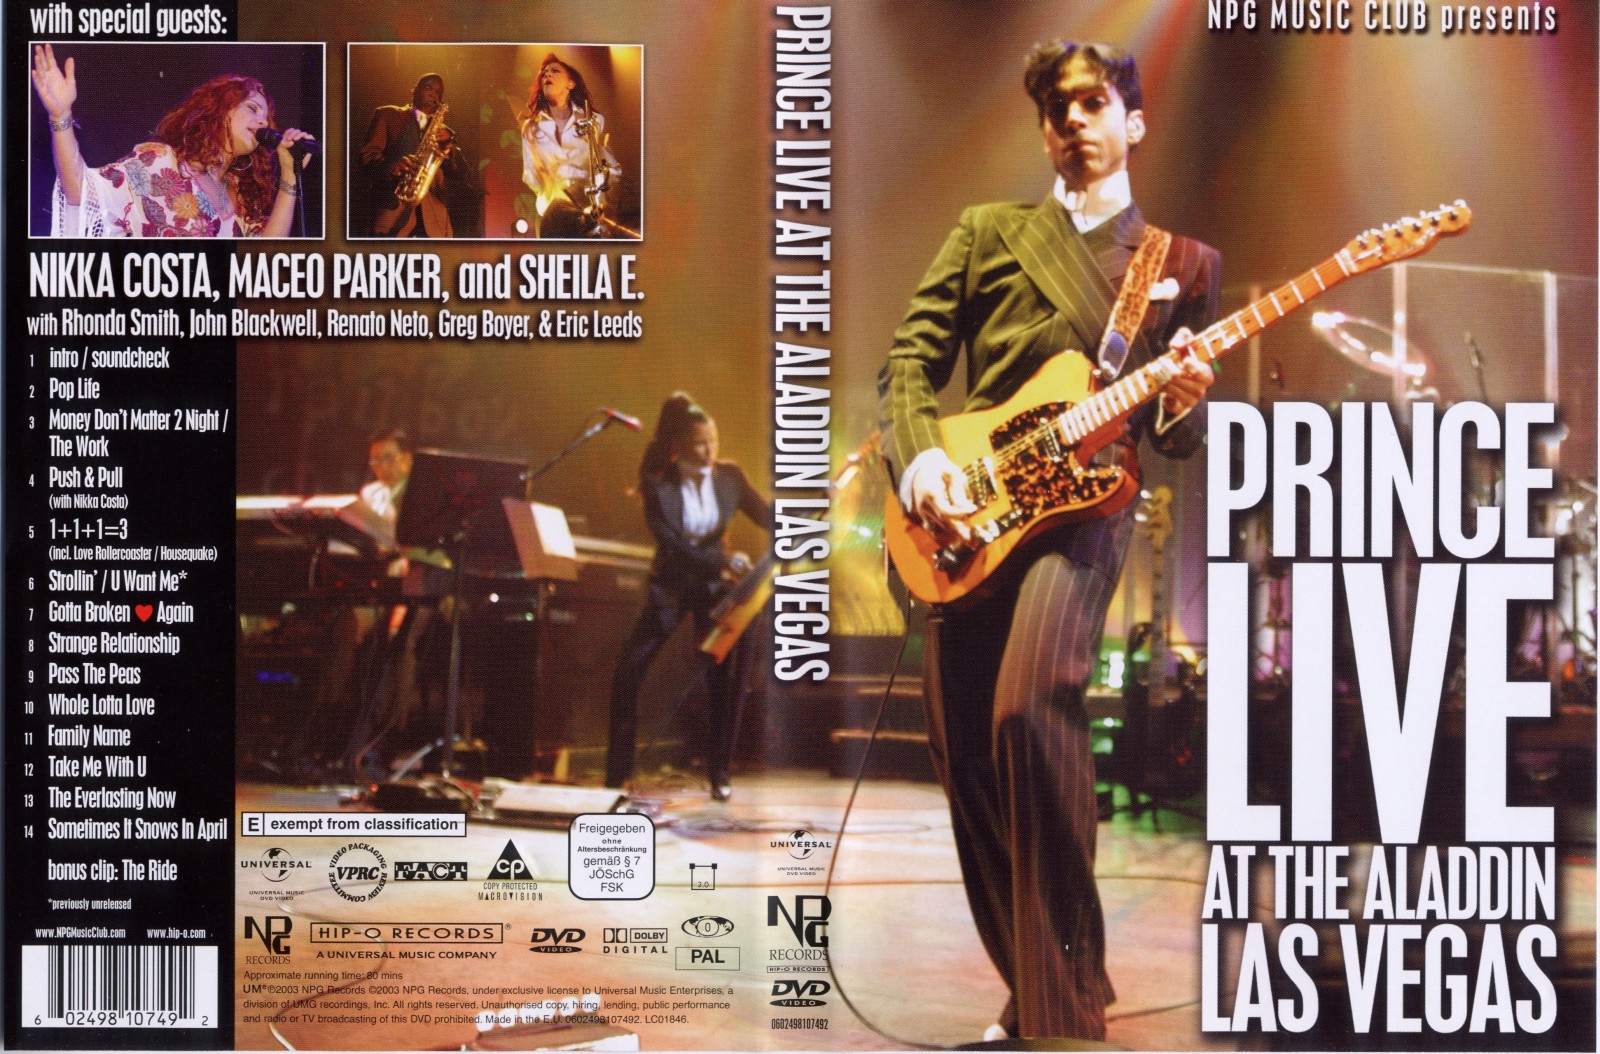 Jaquette DVD Prince live  las vegas